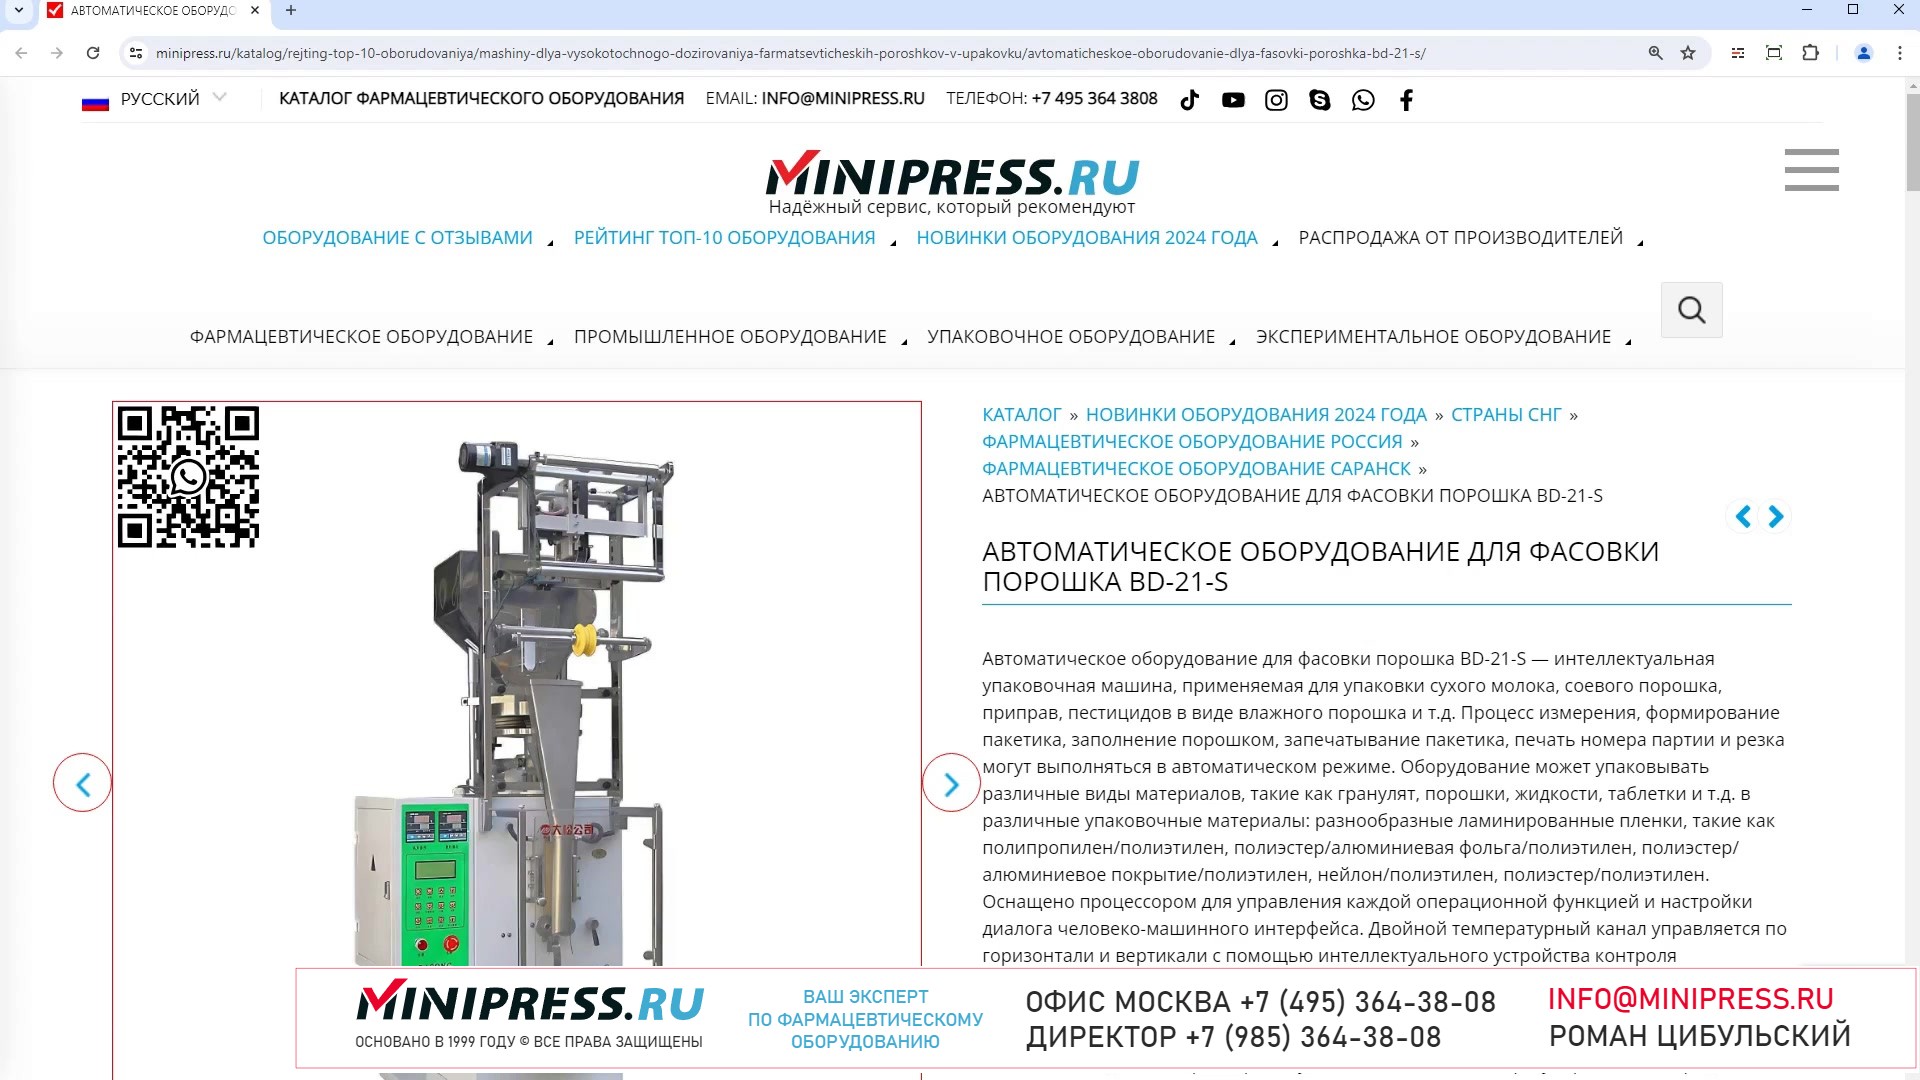 Minipress.ru Автоматическое оборудование для фасовки порошка BD-21-S